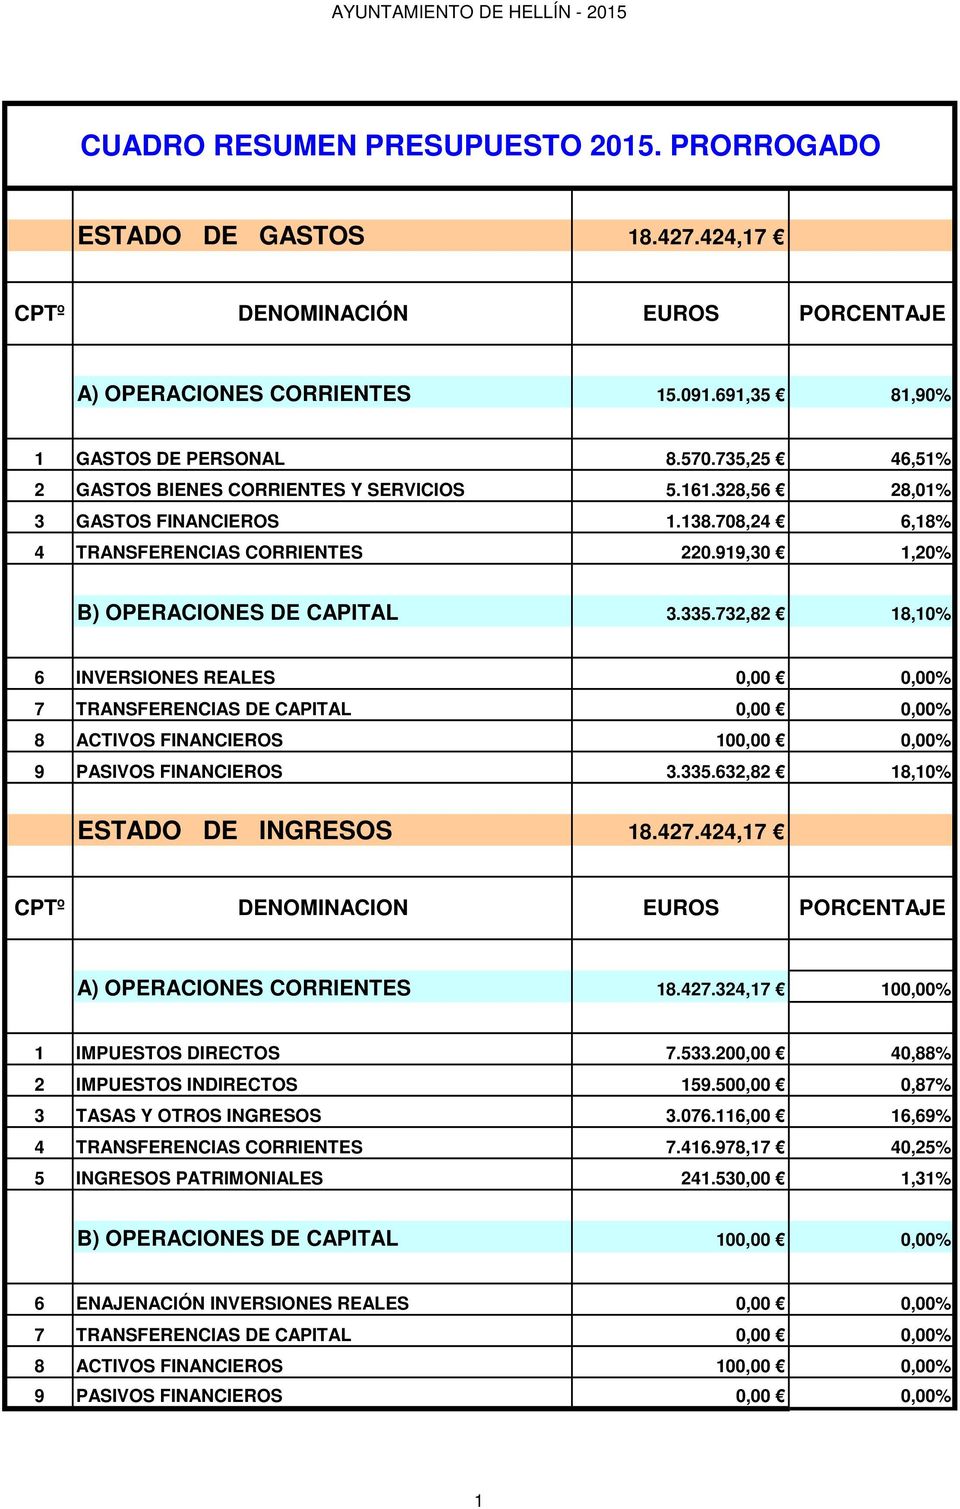 732,82 18,10% 6 INVERSIONES REALES 0,00 0,00% 7 TRANSFERENCIAS DE CAPITAL 0,00 0,00% 8 ACTIVOS FINANCIEROS 100,00 0,00% 9 PASIVOS FINANCIEROS 3.335.632,82 18,10% ESTADO DE INGRESOS 18.427.